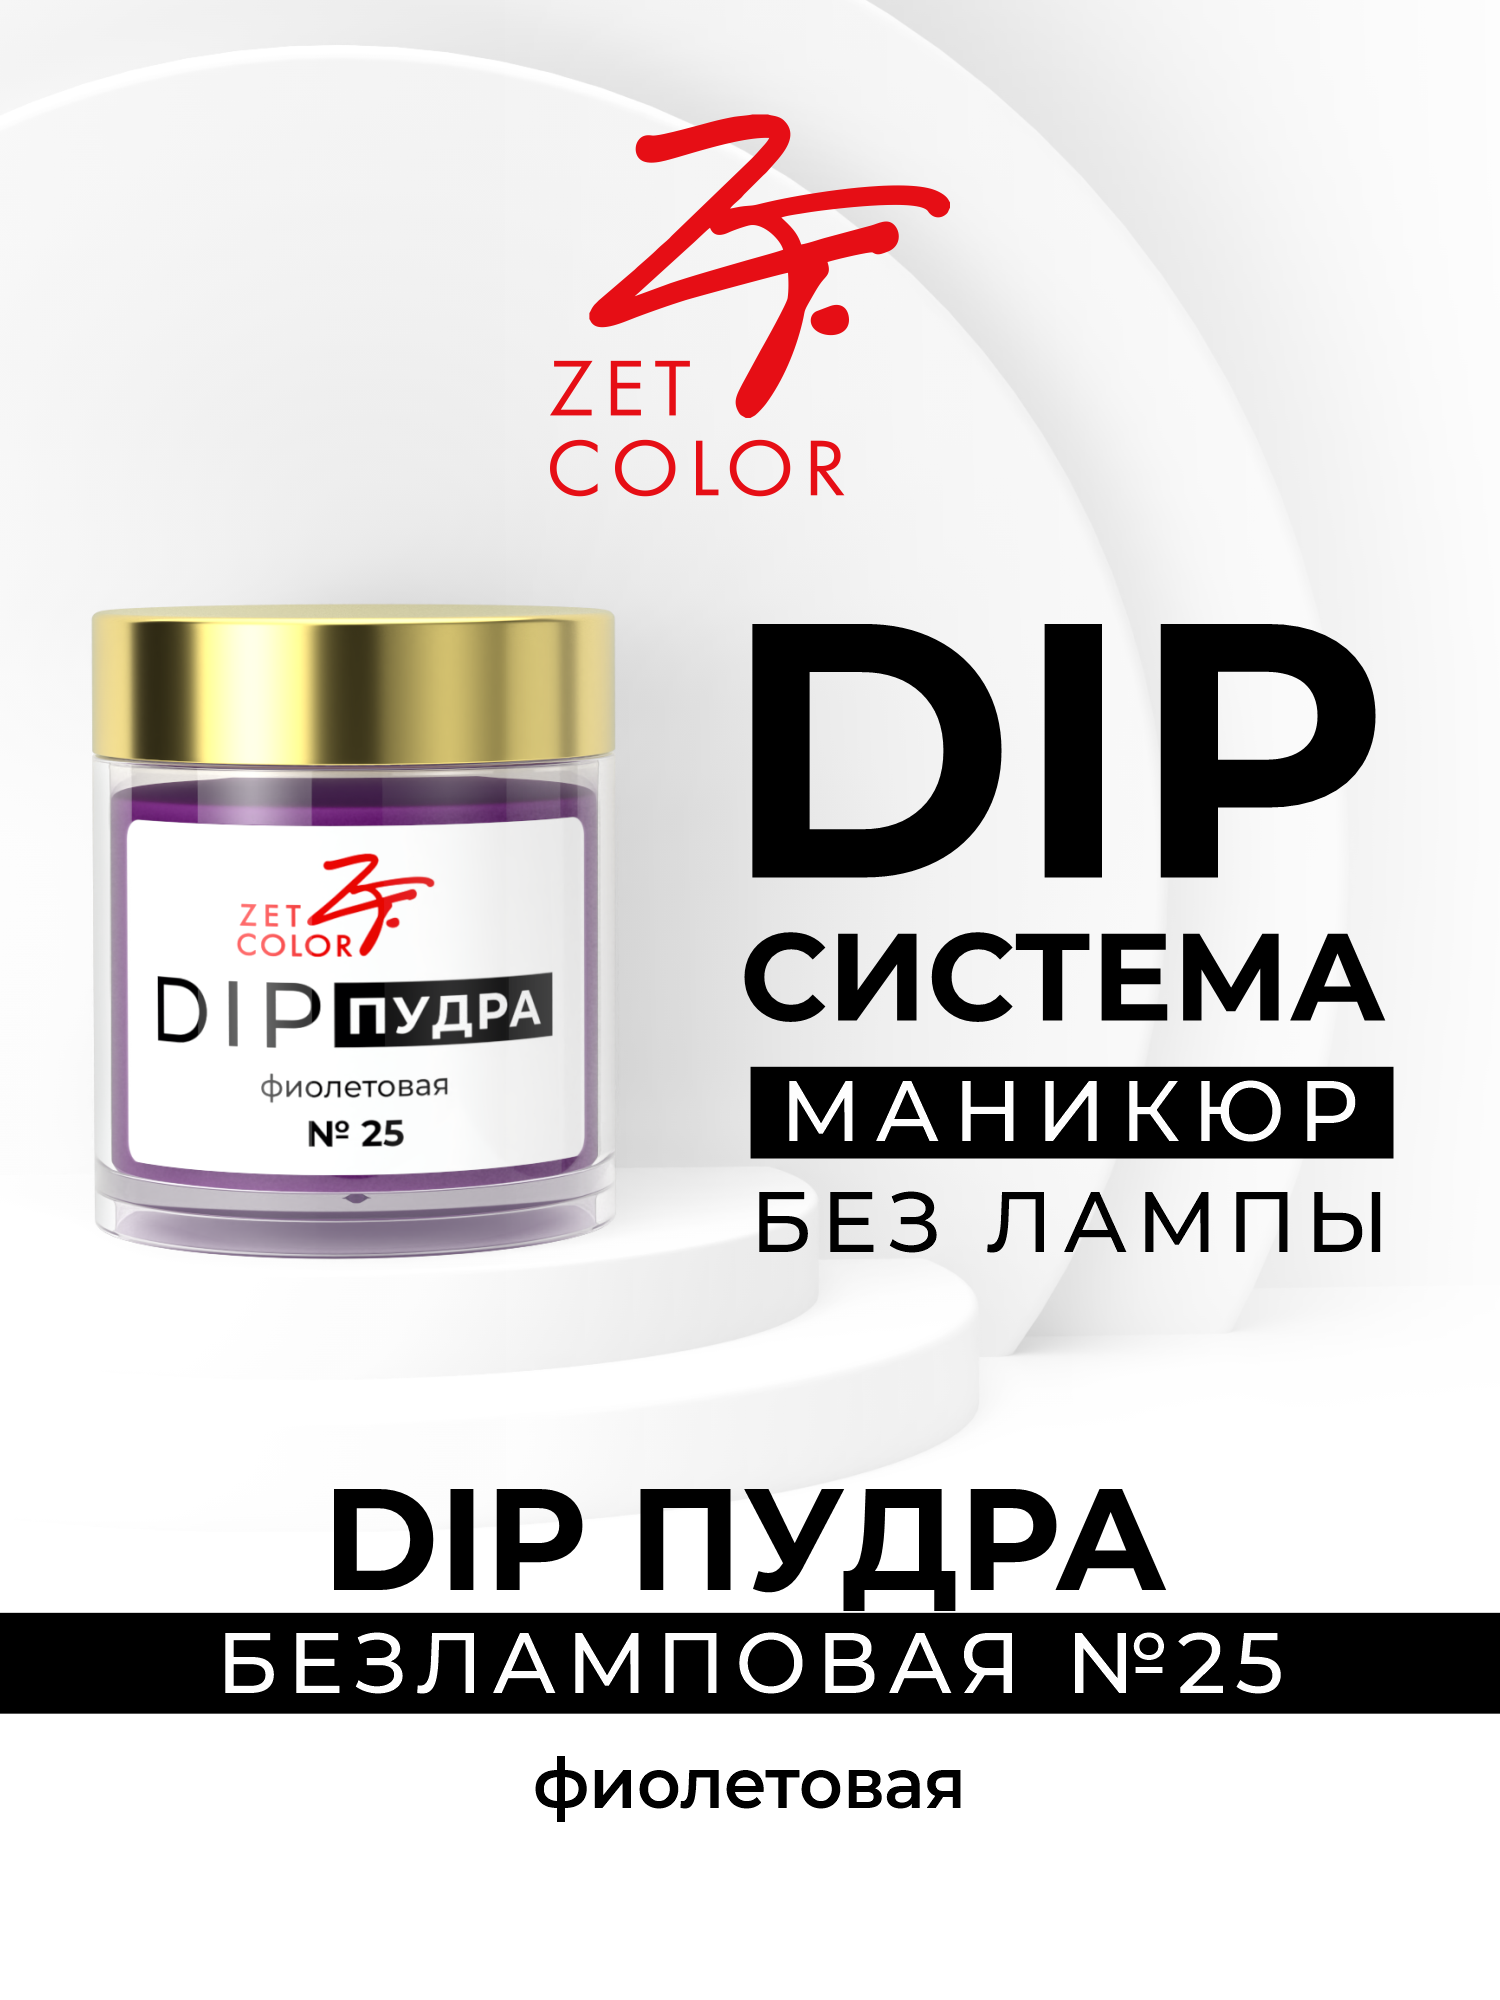 DIP пудра Zet Coloг фиолетовая 25 сухой лак для ногтей